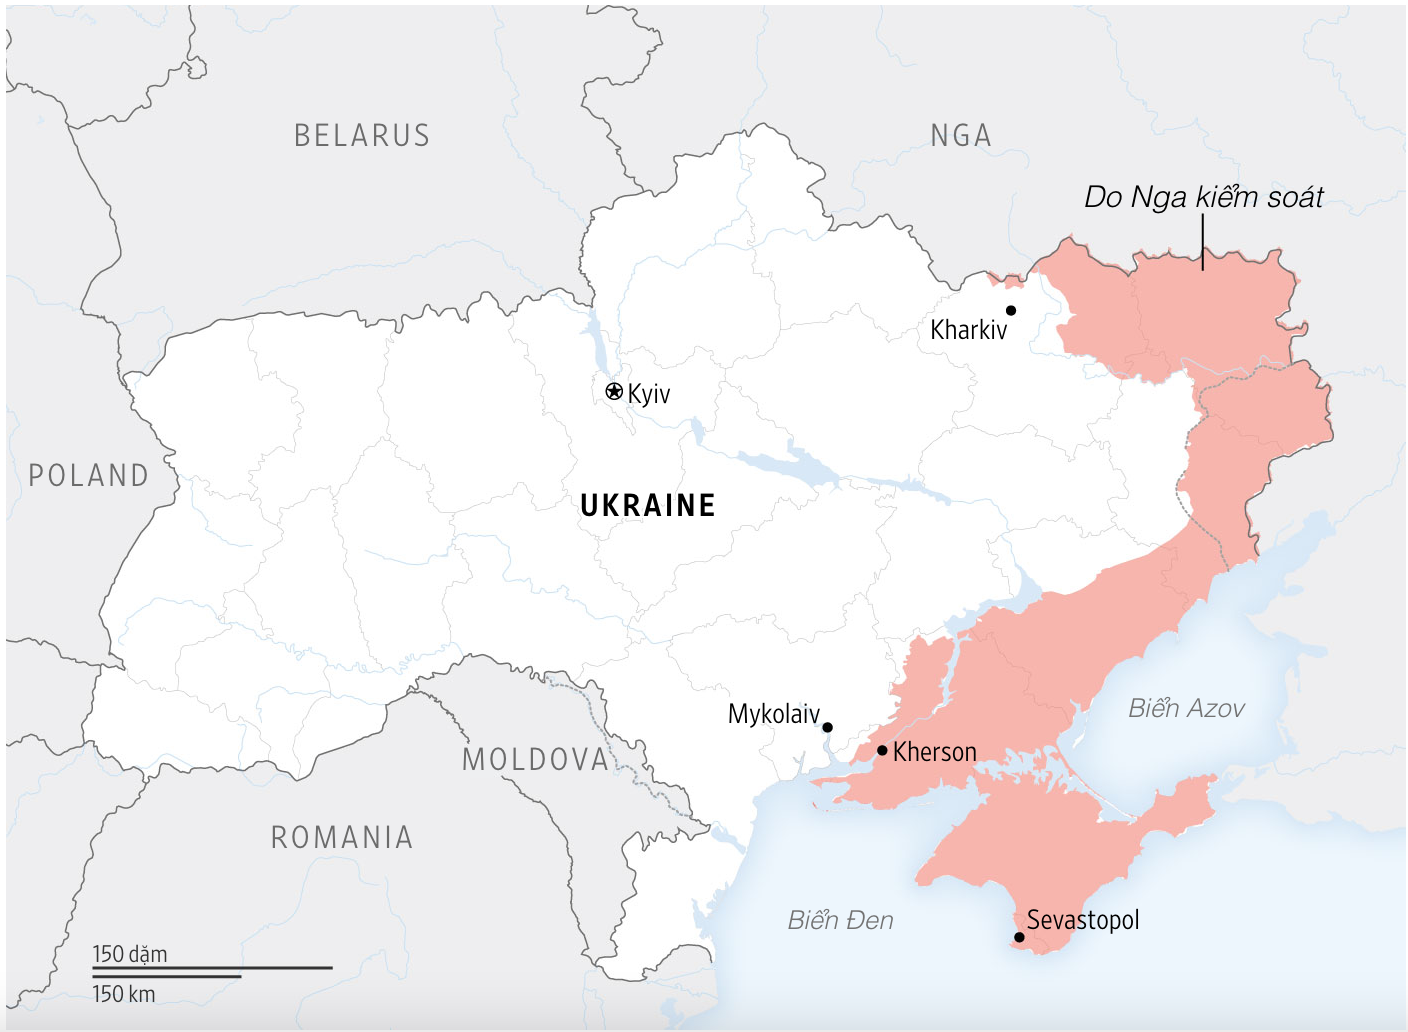 Cuộc chiến Nga - Ukraina bước vào giai đoạn mới - Ảnh 5.